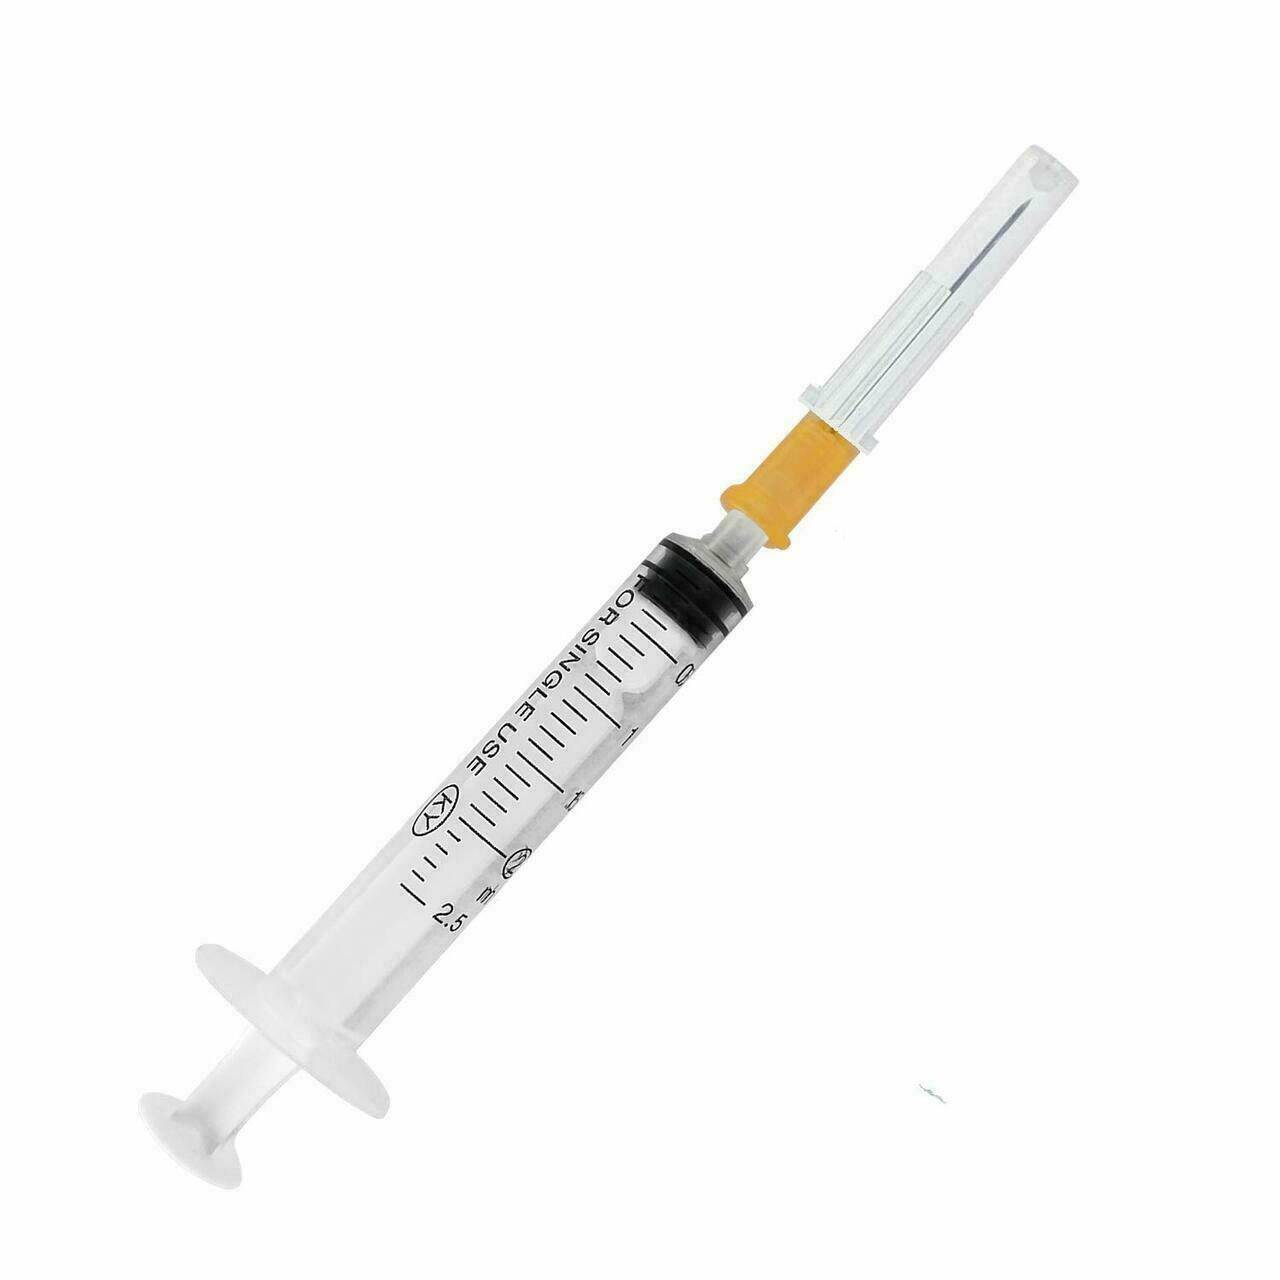 2ml/cc syringe with orange 25 gauge x 20 - UKMEDI